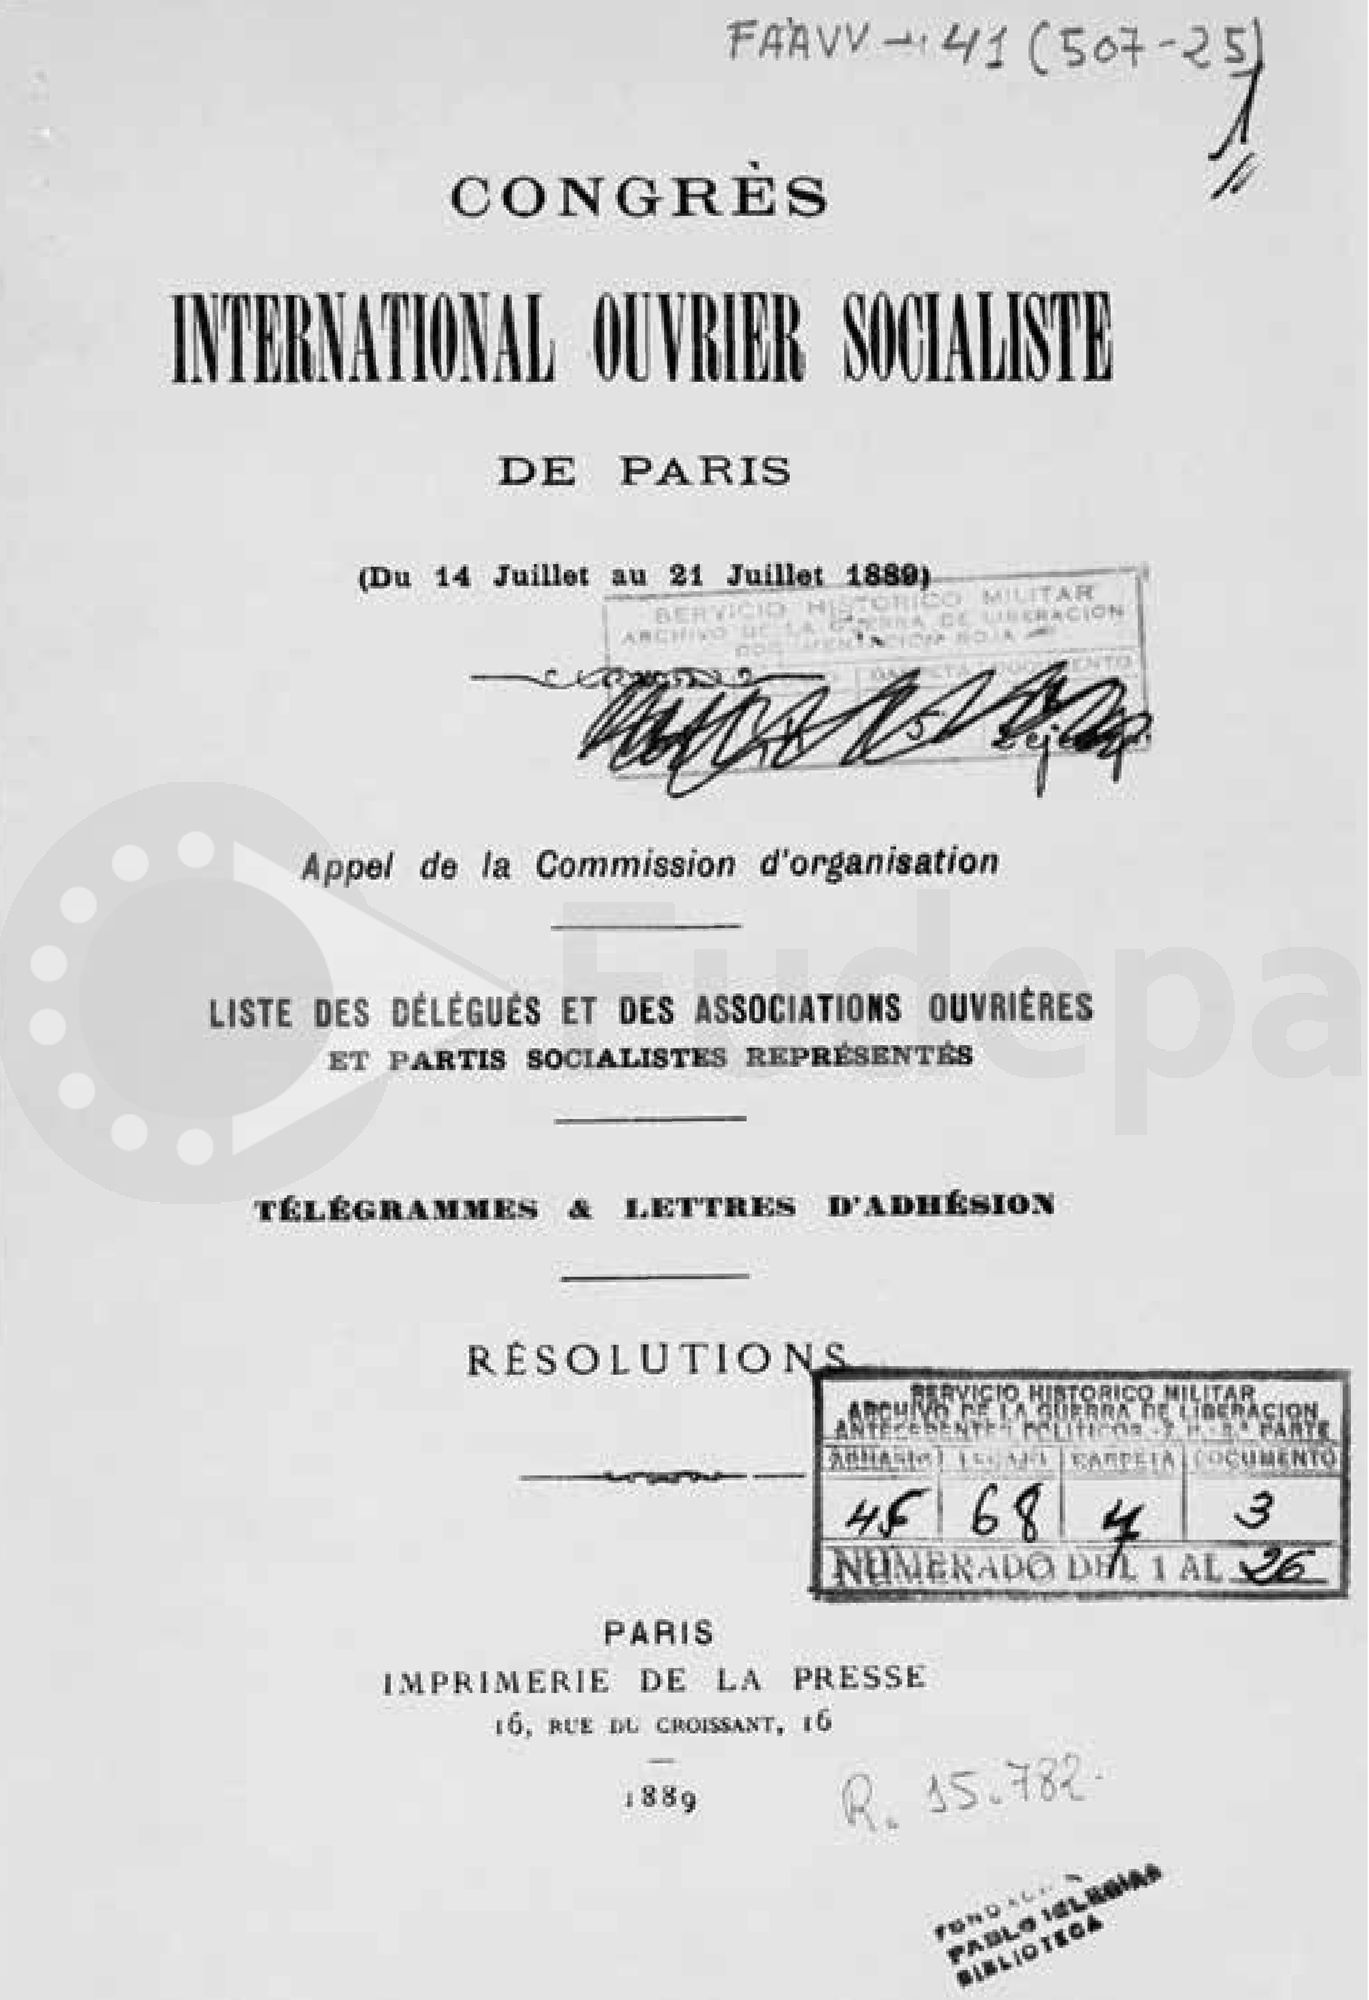 El Congreso Obrero Socialista, celebrado en París en 1889, acordaba la celebración de 1º de Mayo y en 1890 se celebraba en España la primera manifestación del 1 de Mayo